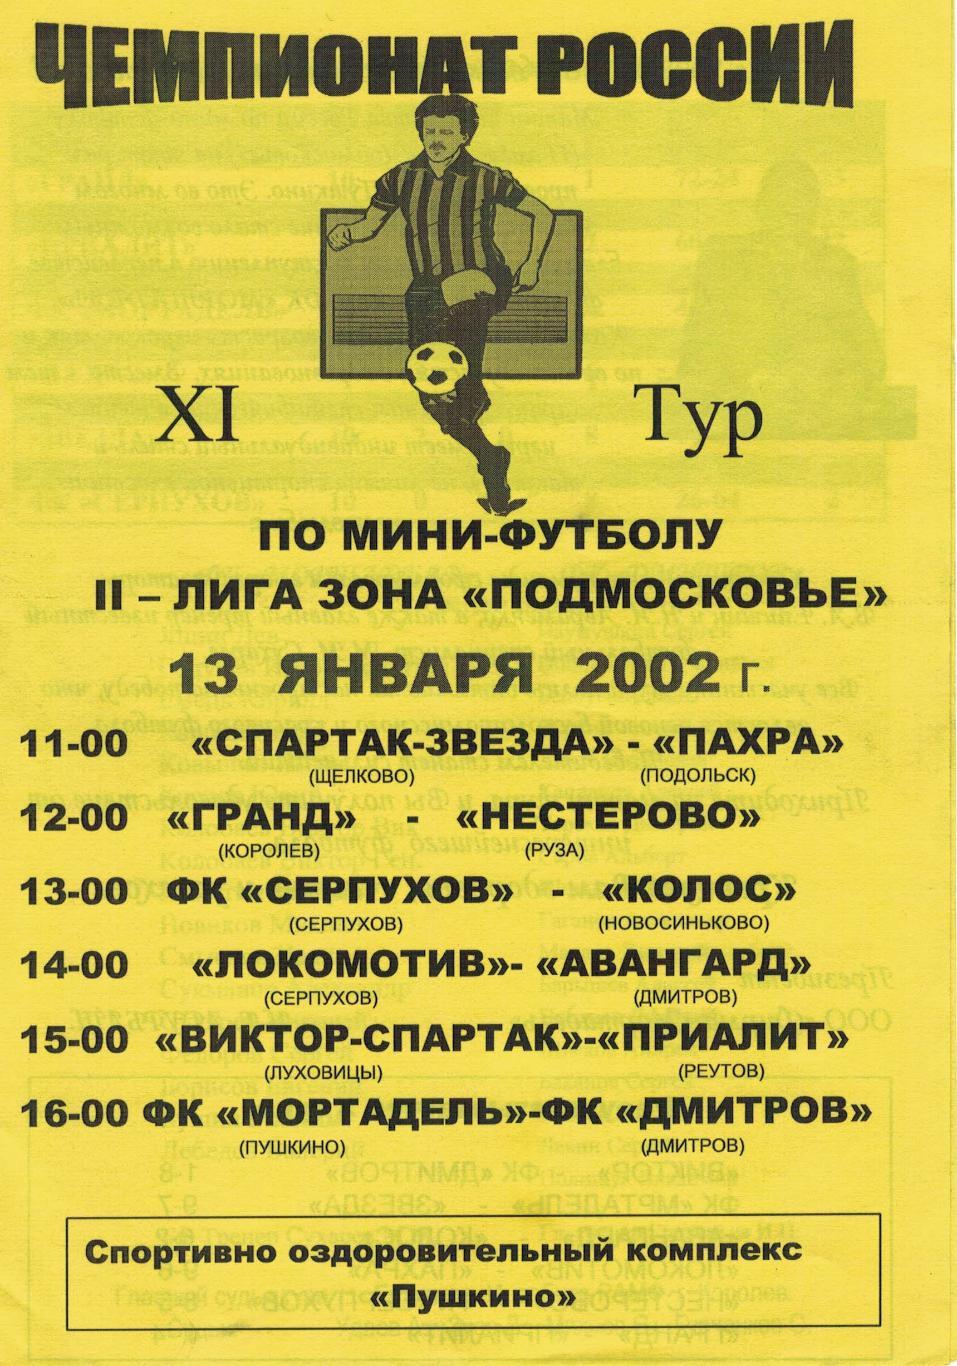 Чемпионат России по мини-футболу 2-лига зона Подмосковье - 13.01.2002